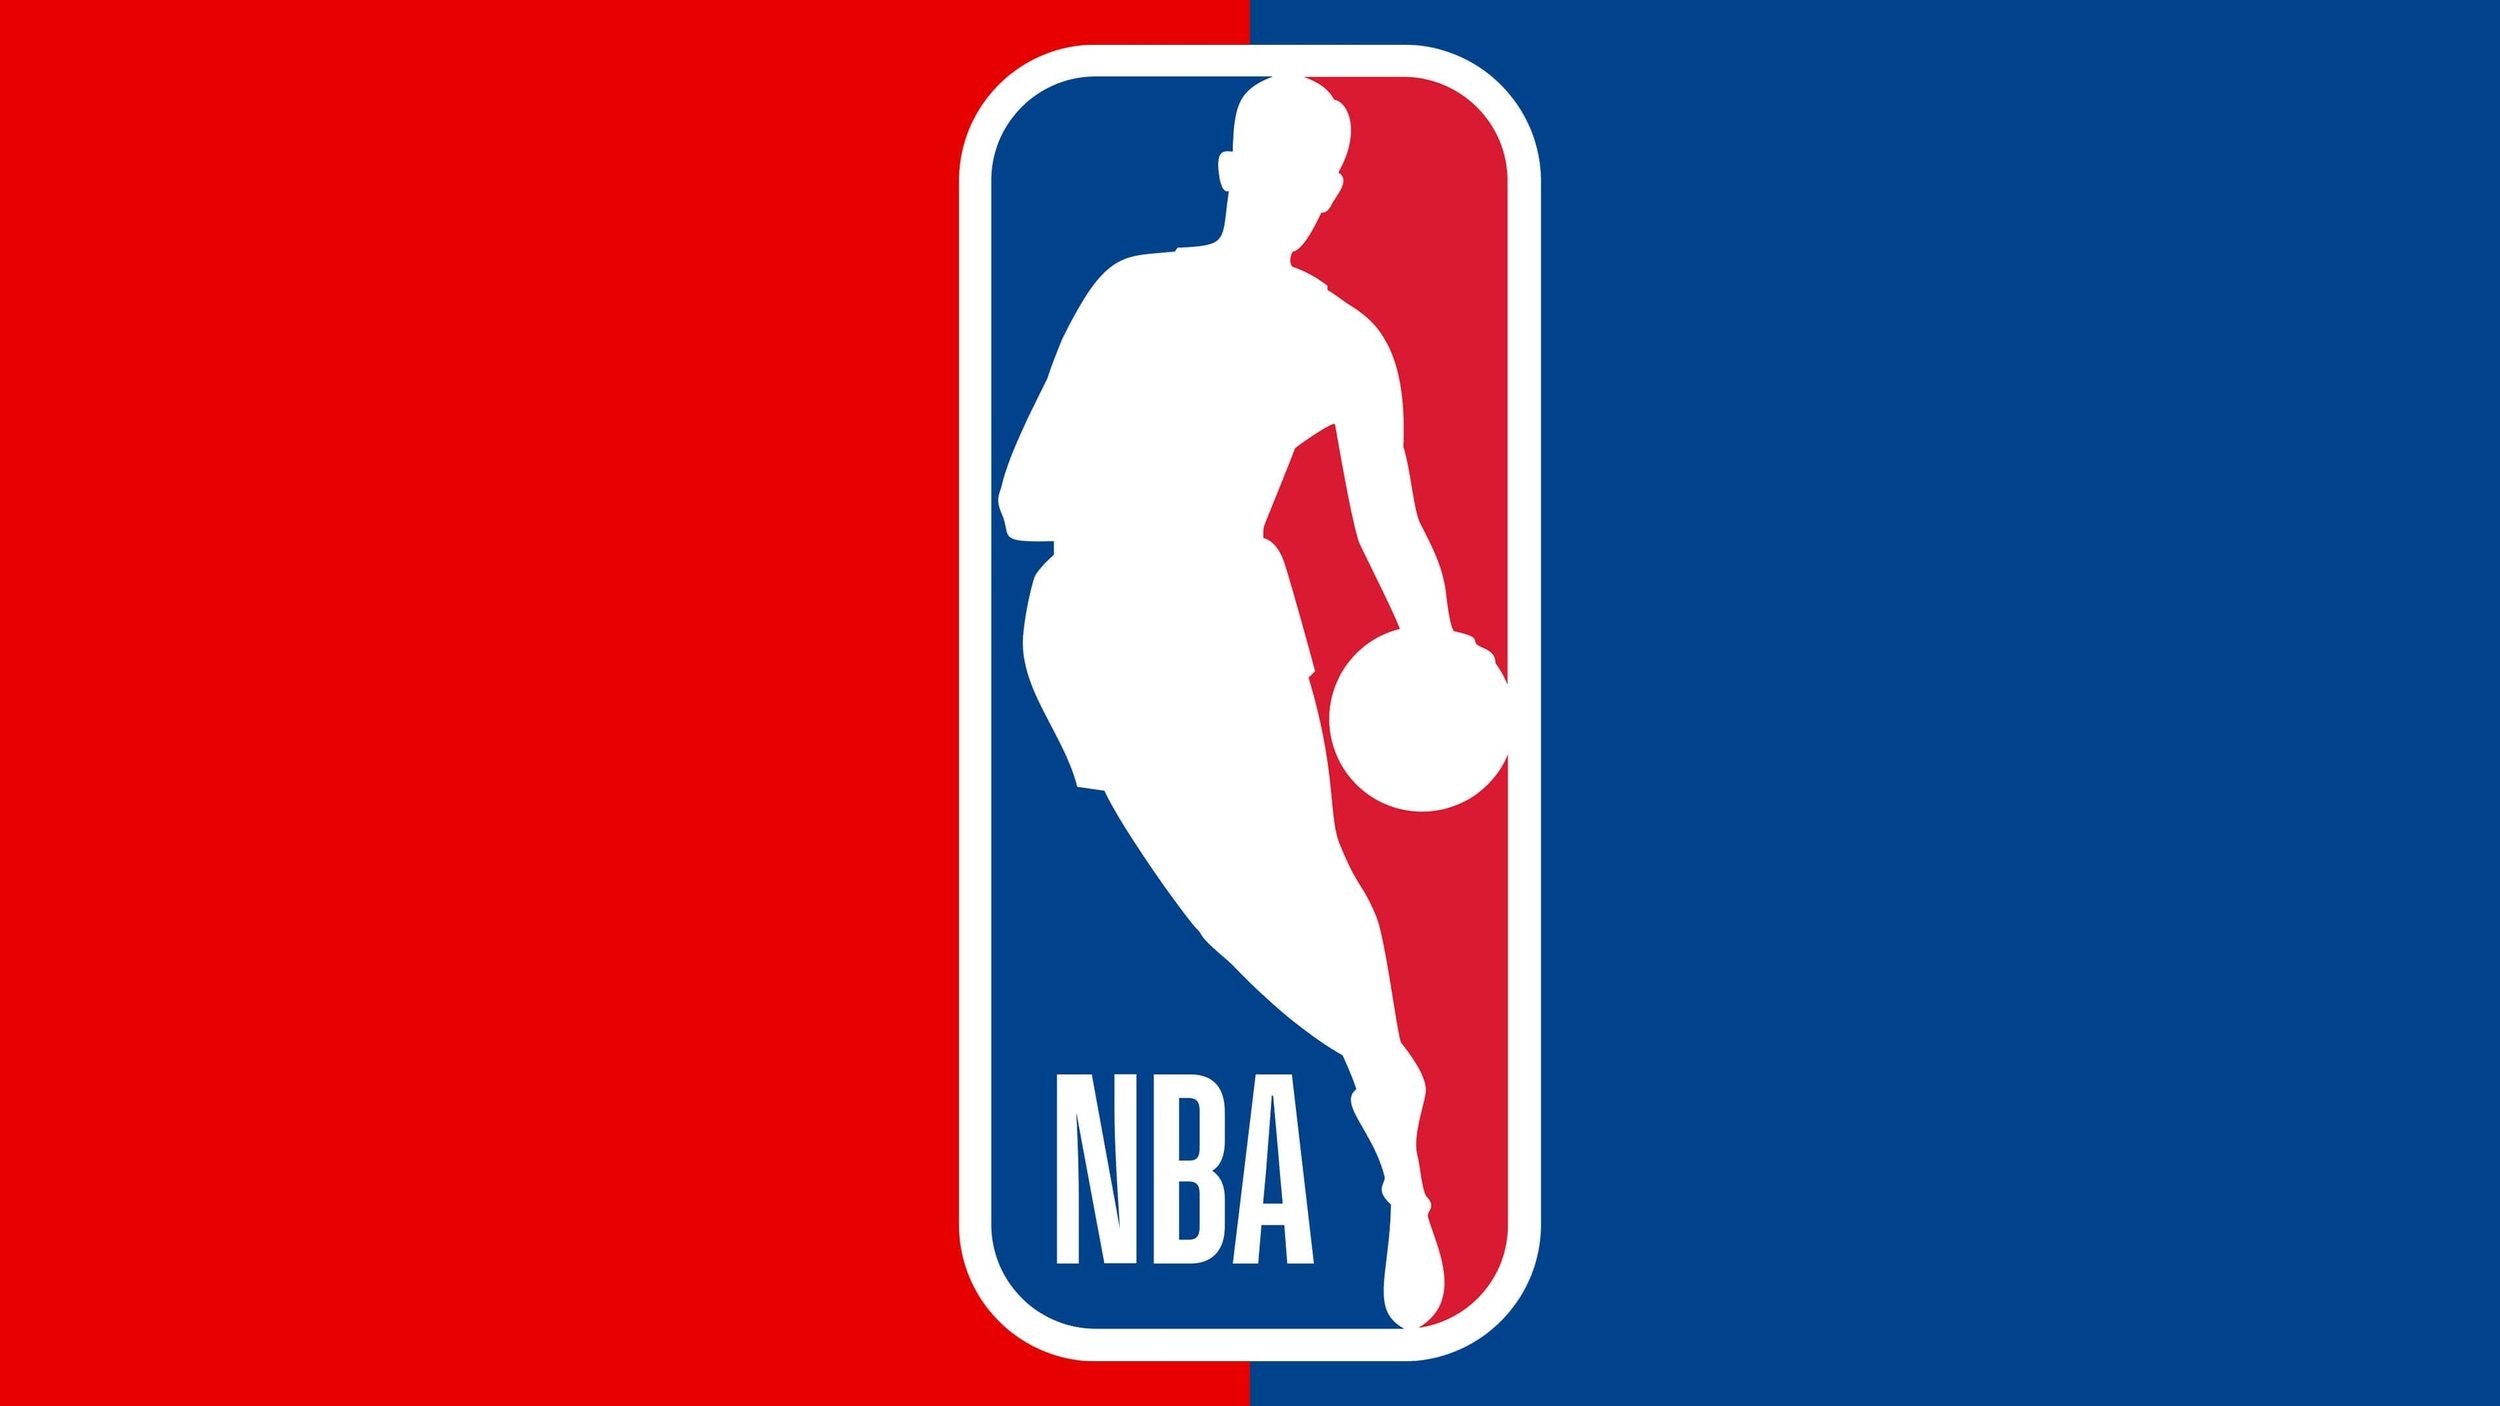 NBA-Emblem.jpg